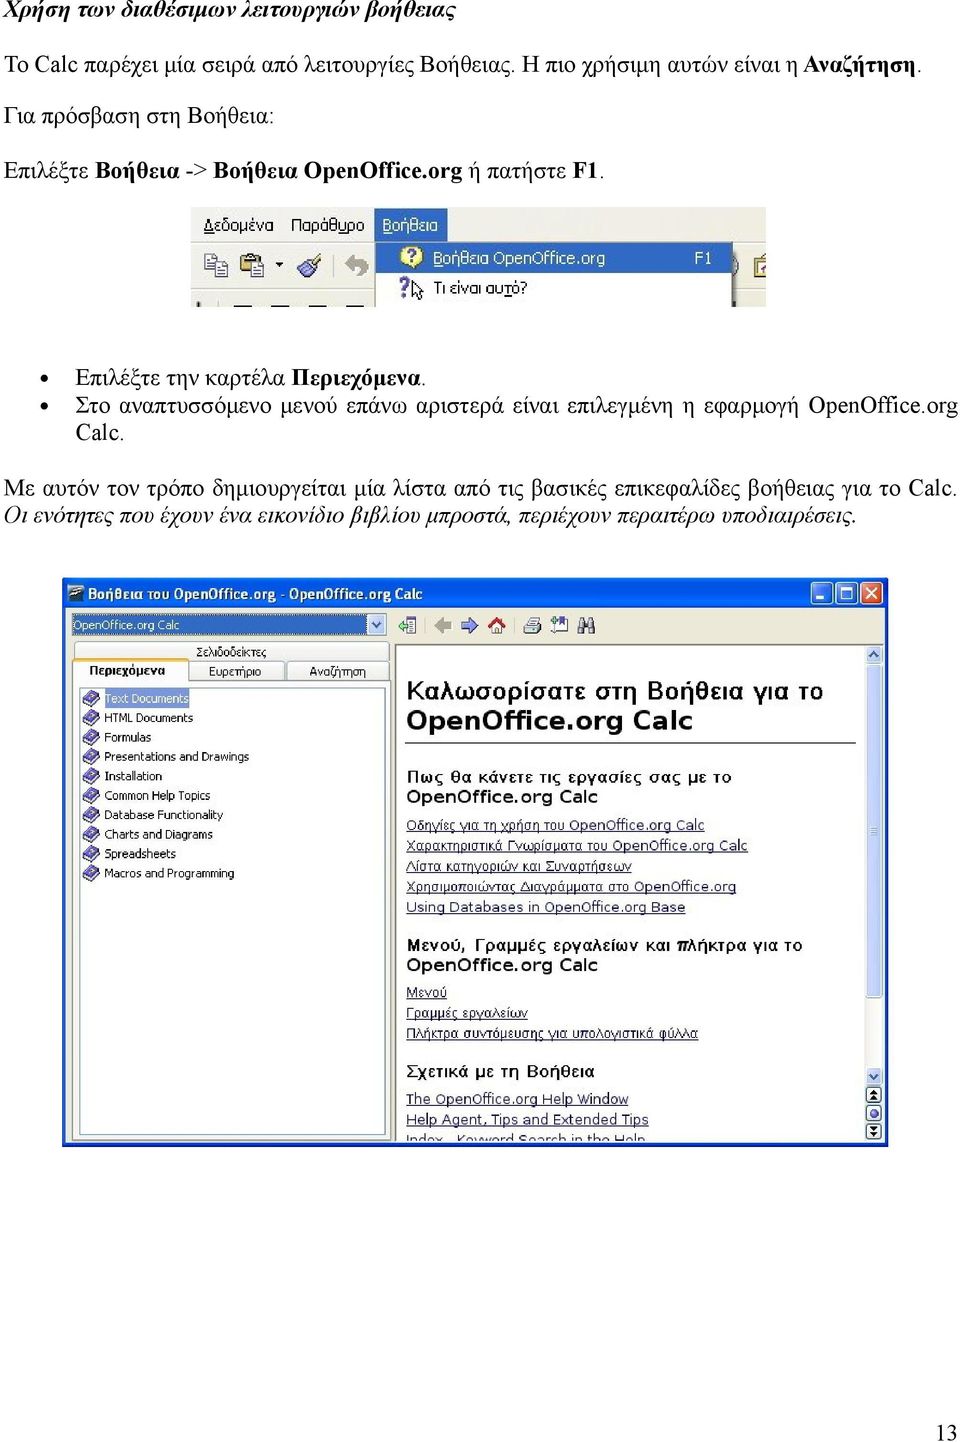 Επιλέξτε την καρτέλα Περιεχόμενα. Στο αναπτυσσόμενο μενού επάνω αριστερά είναι επιλεγμένη η εφαρμογή OpenOffice.org Calc.